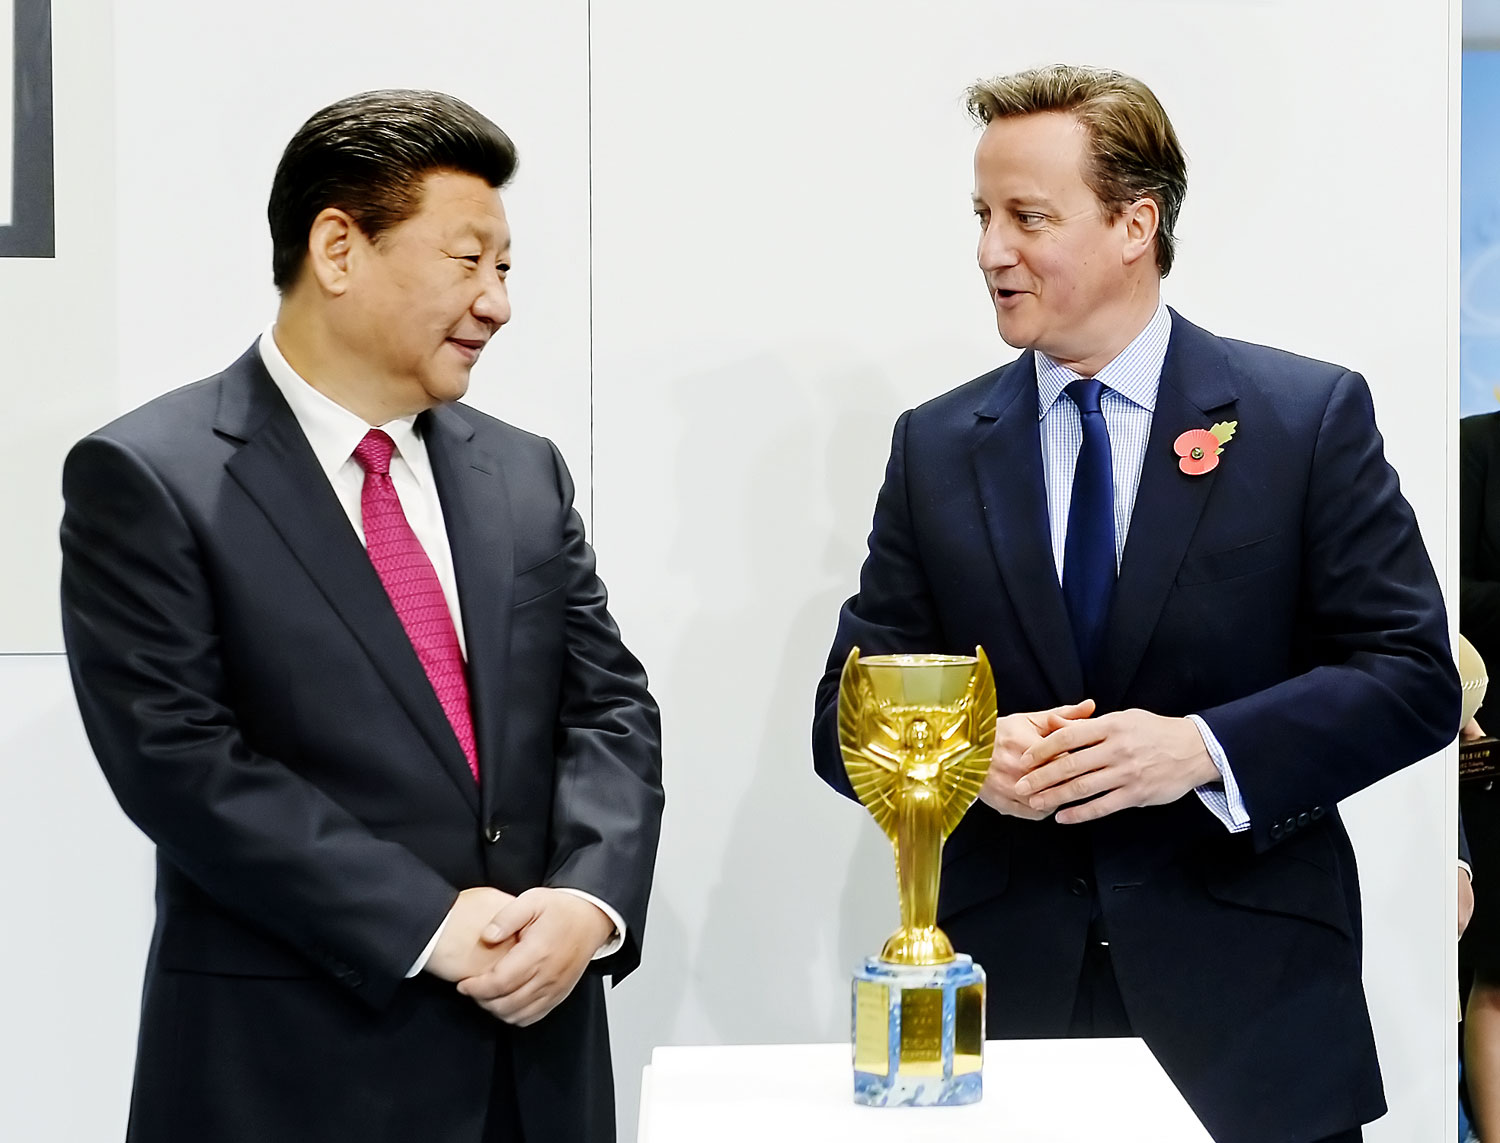 Kína bízik a maradásban. Hszi Csin-ping és David Cameron Manchesterben tekintették meg az eredeti futballvilágbajnoki trófeát, a Jules Rimet-kupát